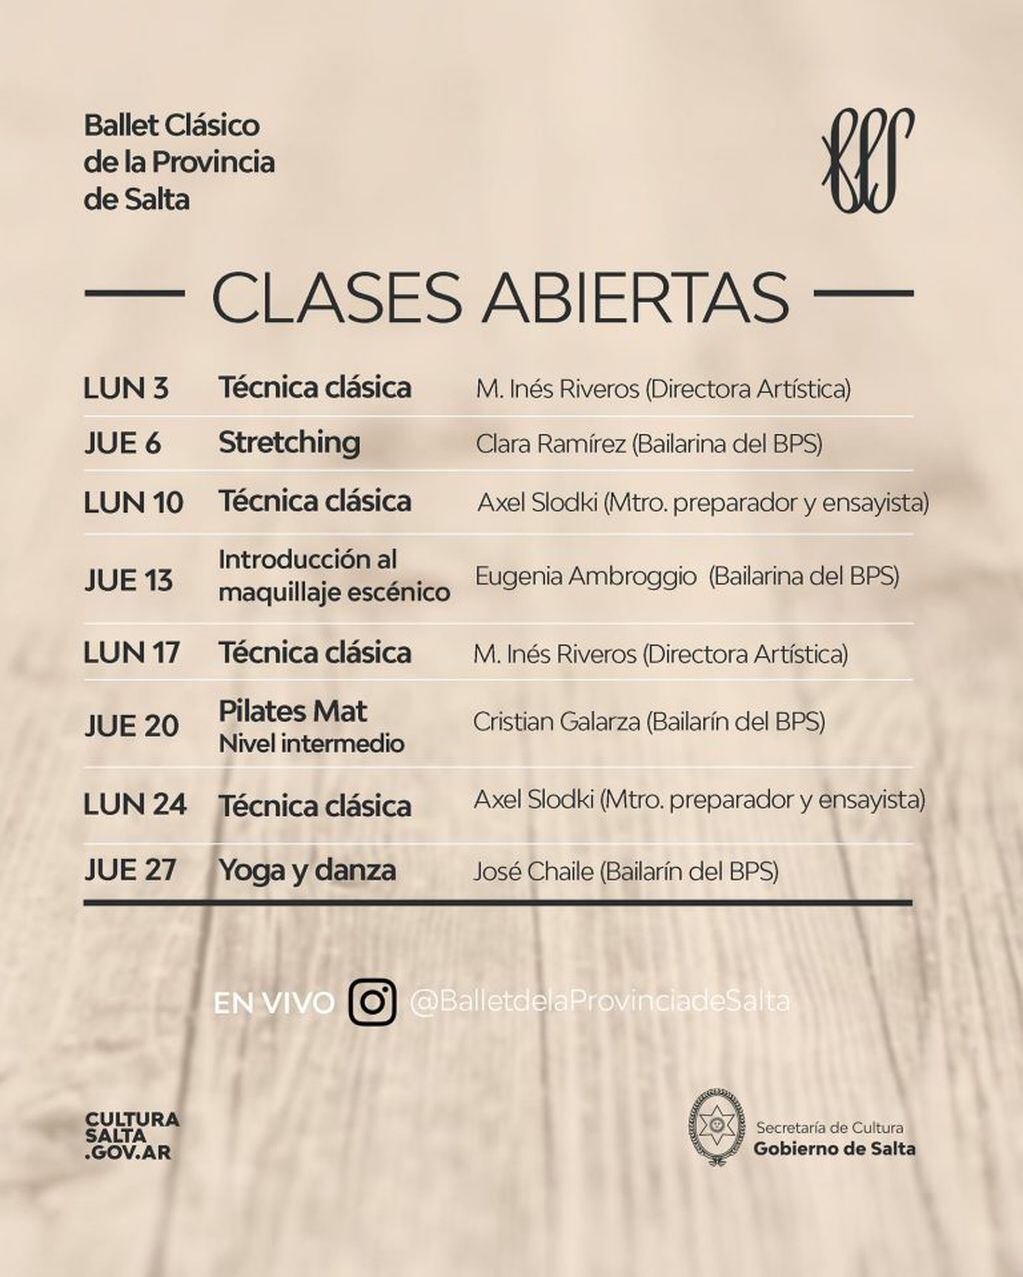 En agosto el Ballet de la Provincia de Salta continúa sus clases virtuales (Facebook Ballet de la Provincia de Salta - oficial)